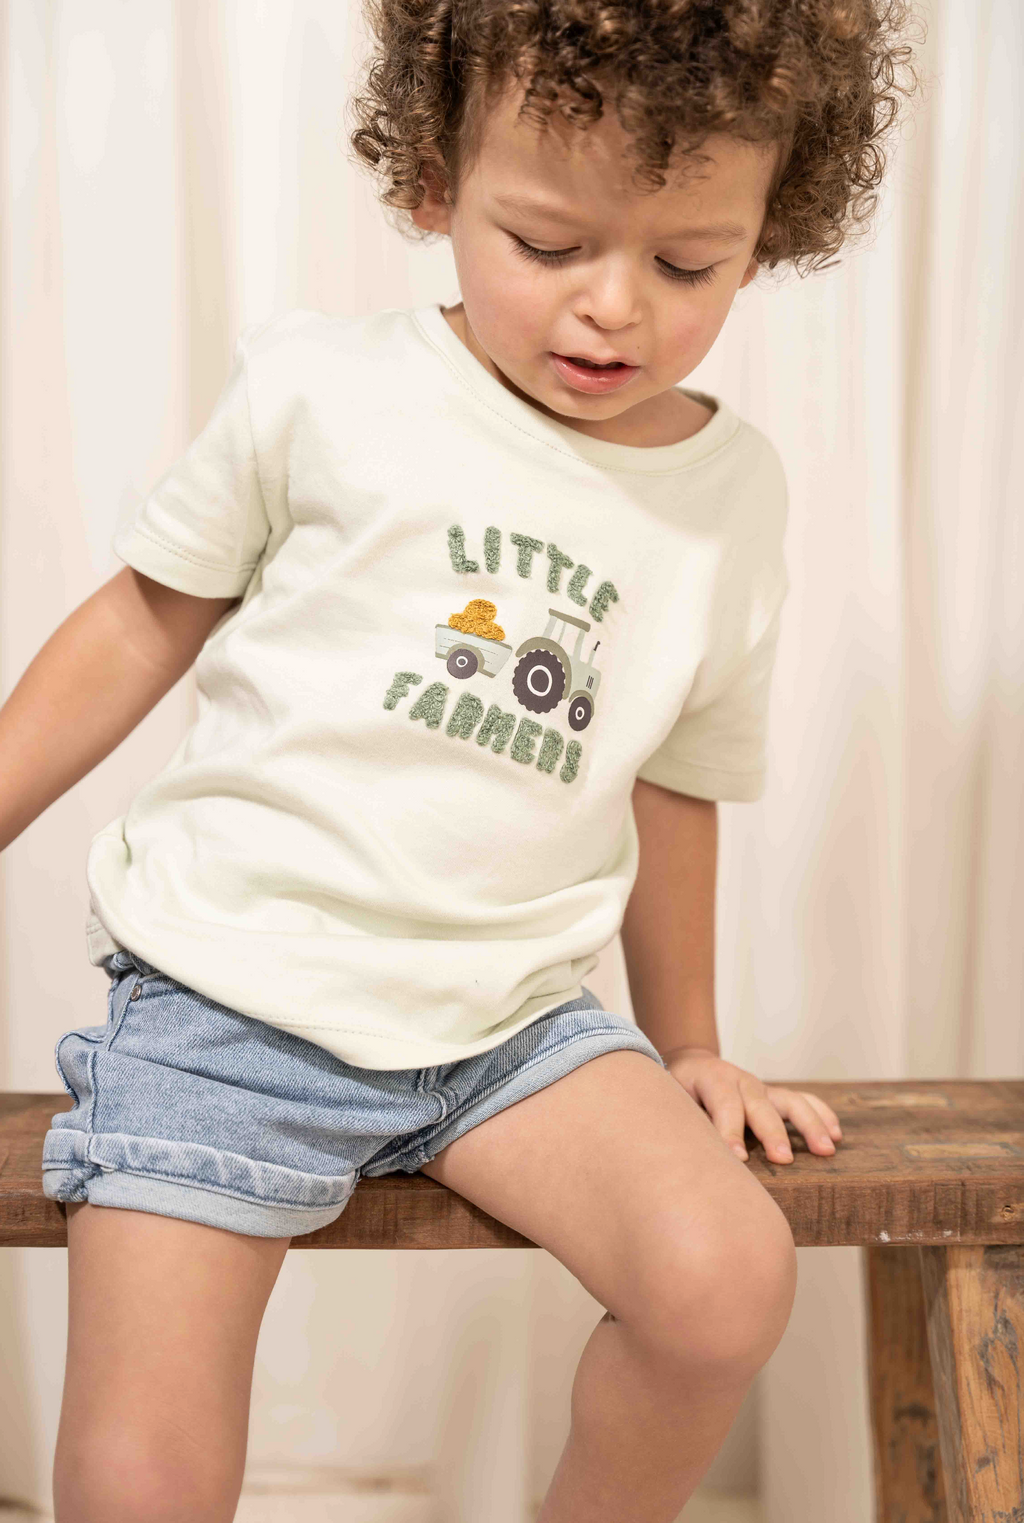 Little Dutch Shirt Little Farmers